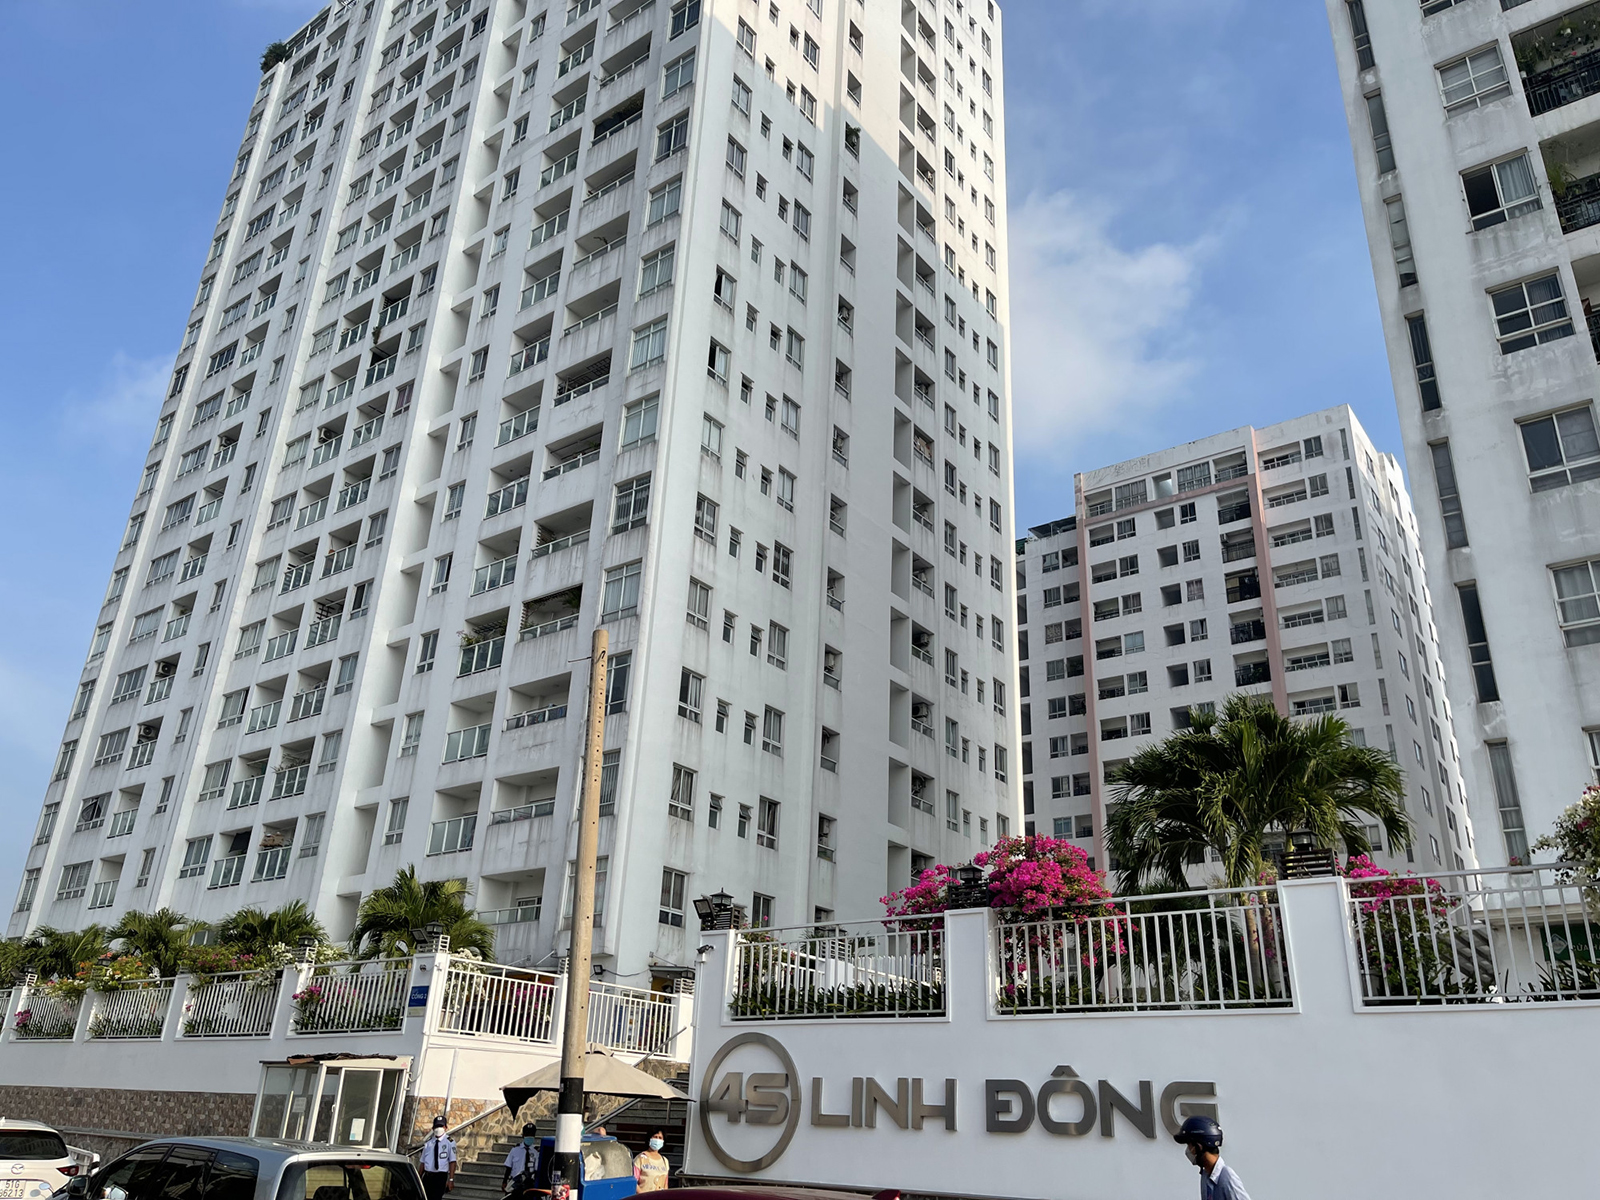 Bán căn hộ chung cư 4S Linh Đông gần Bến xe miền Đông 6km